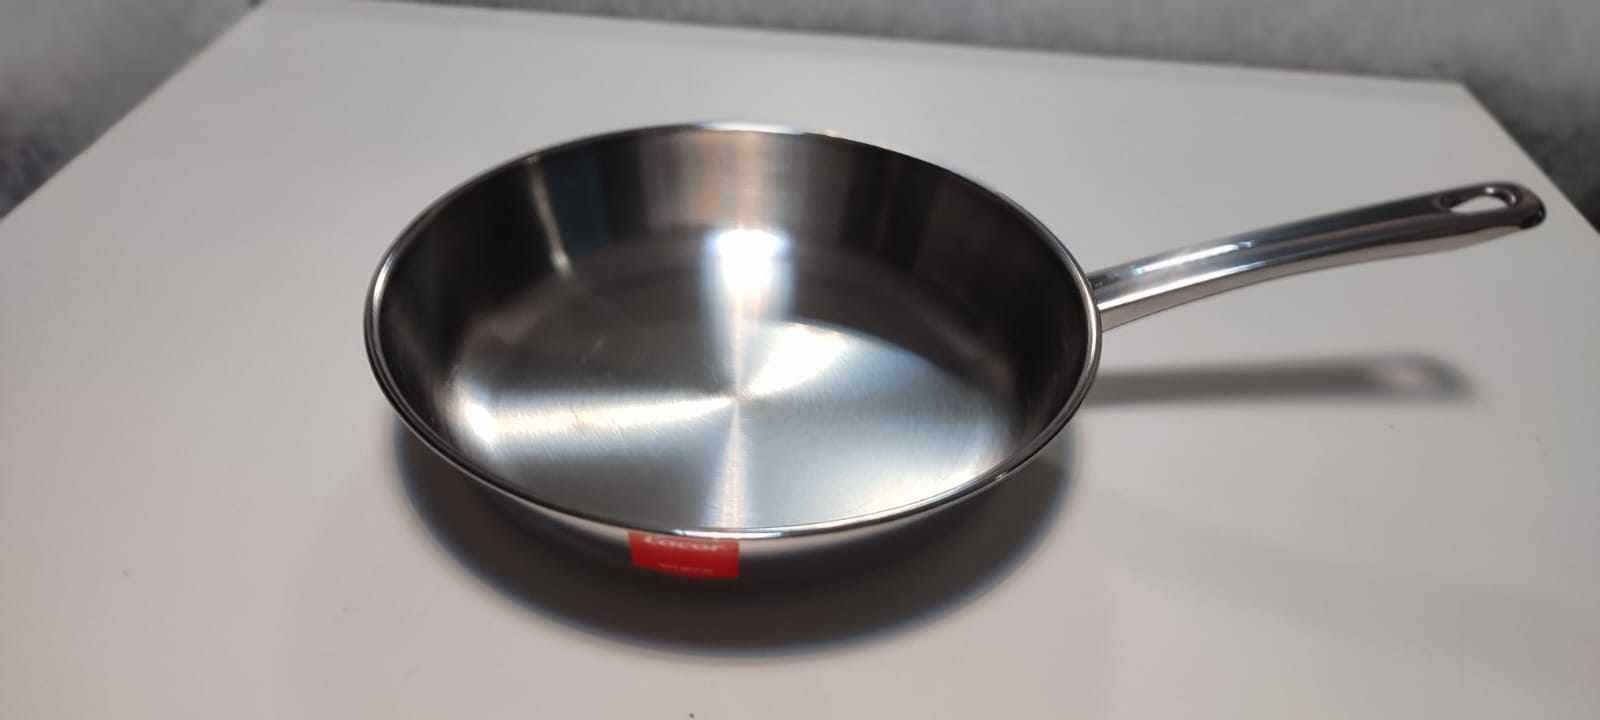 Lacor 40627 patelnia do smażenia Vitrocor, 26 cm, srebrna